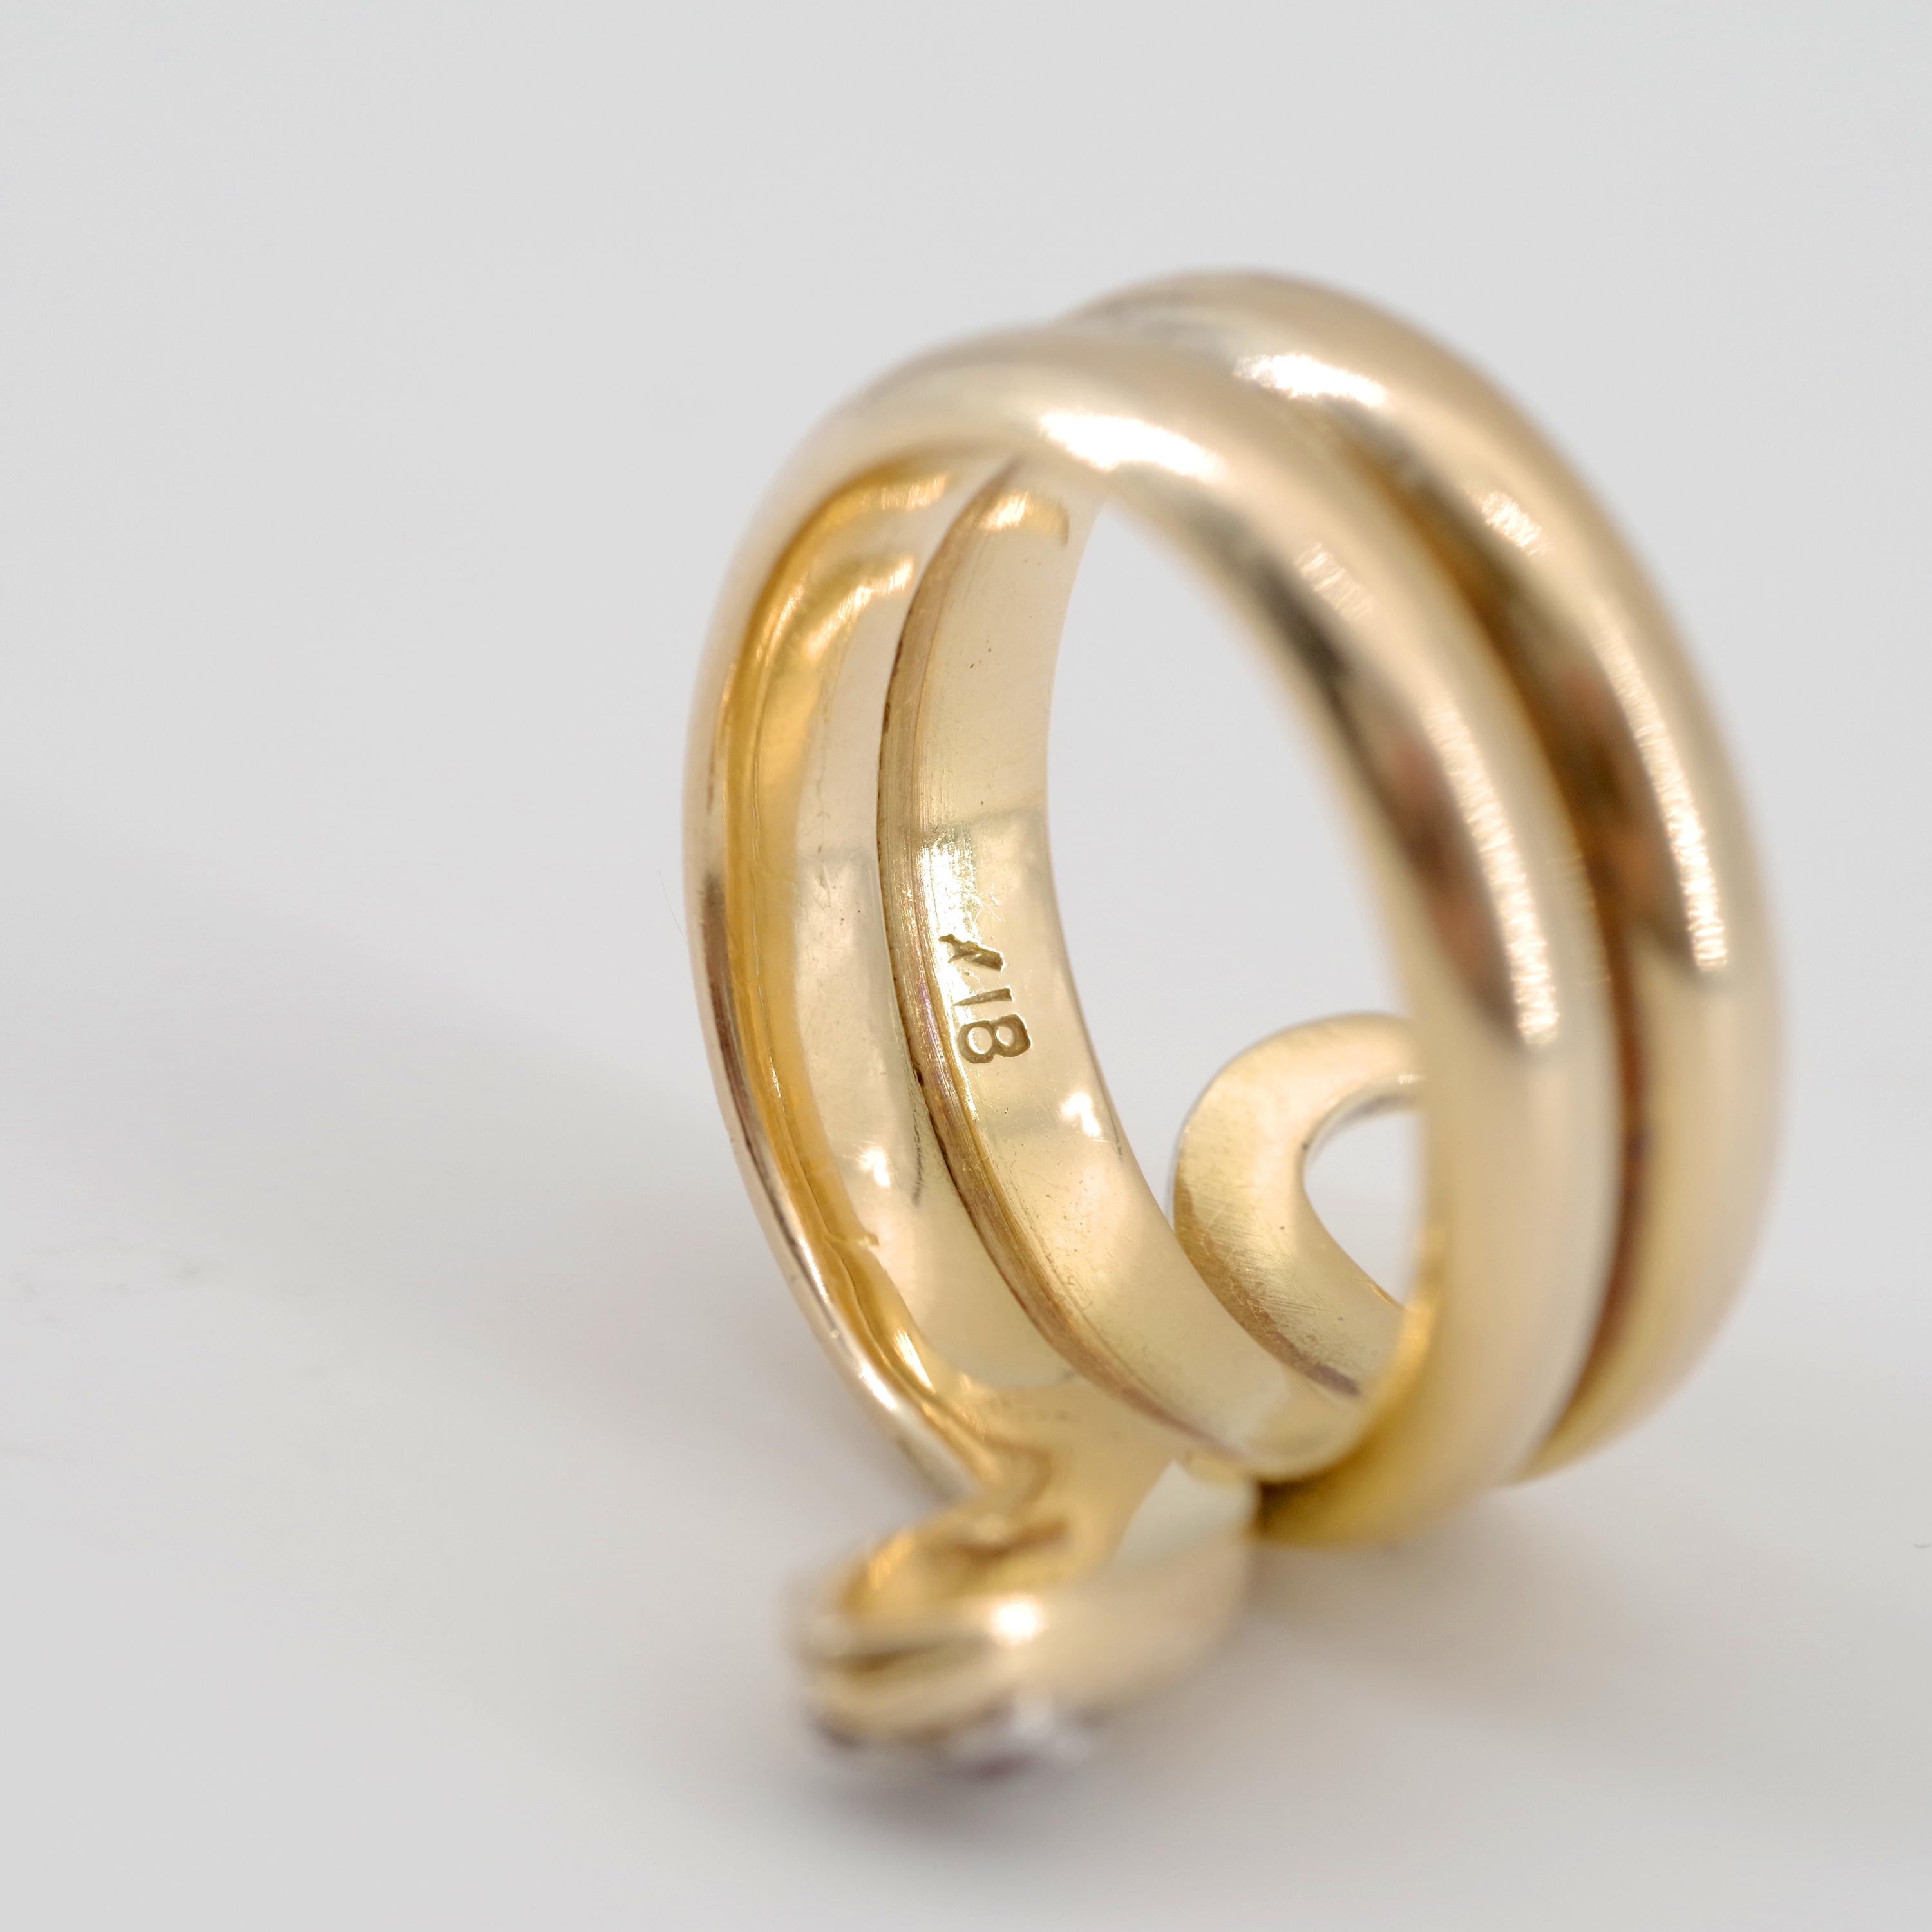 Men's Snake Ring from Gold Rush Era Devours All Other Snake Rings 3